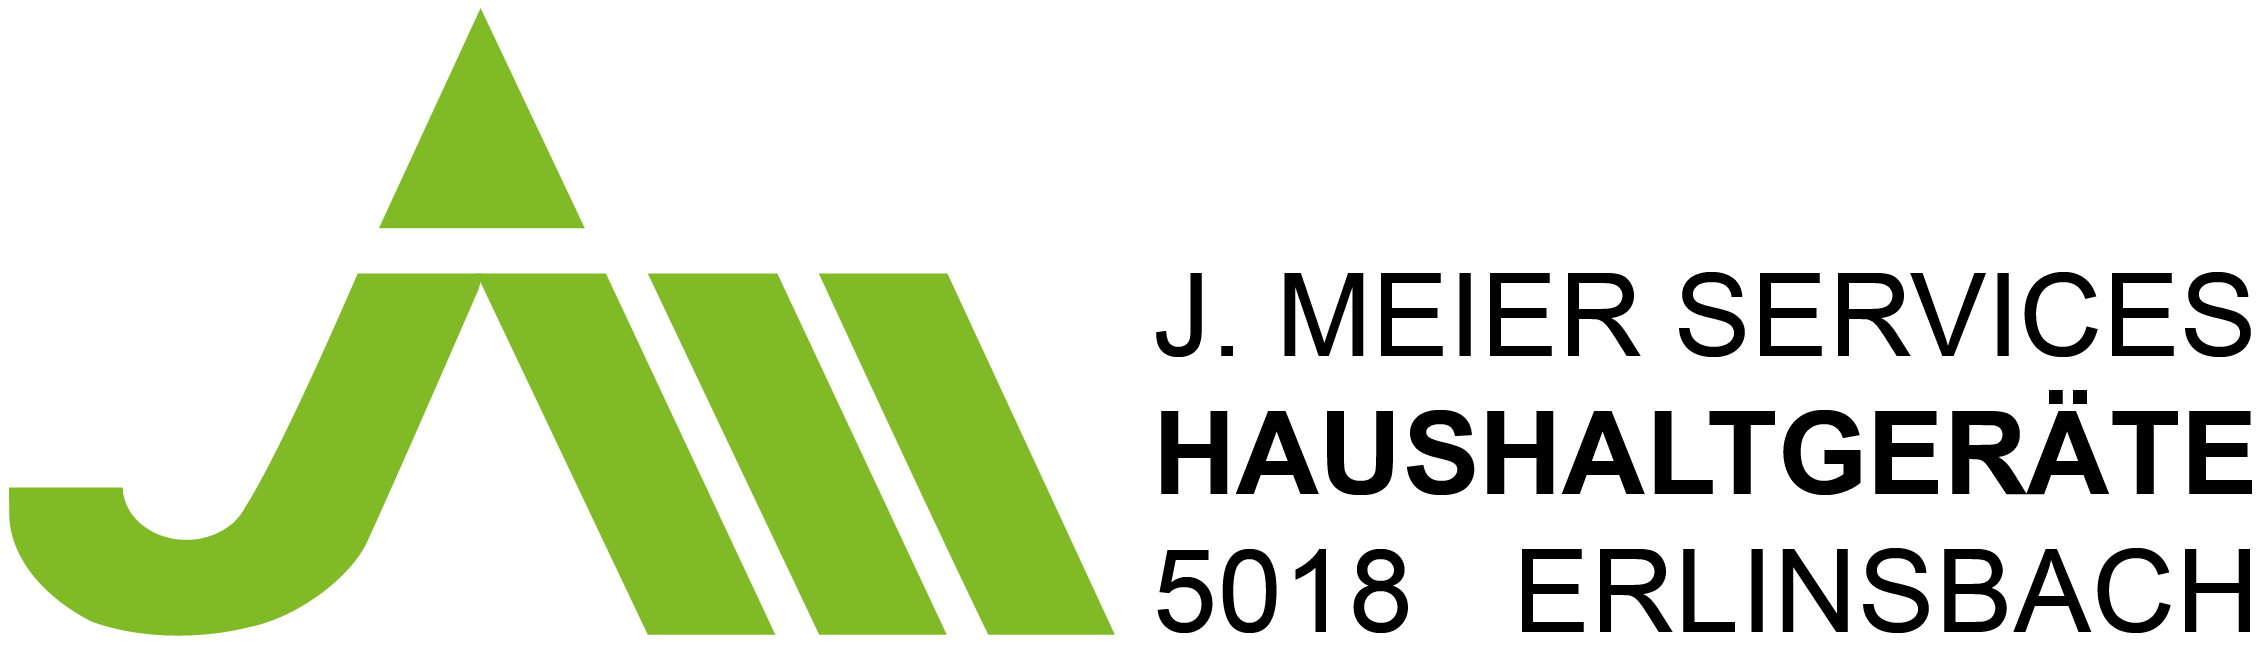 J. Meier Services